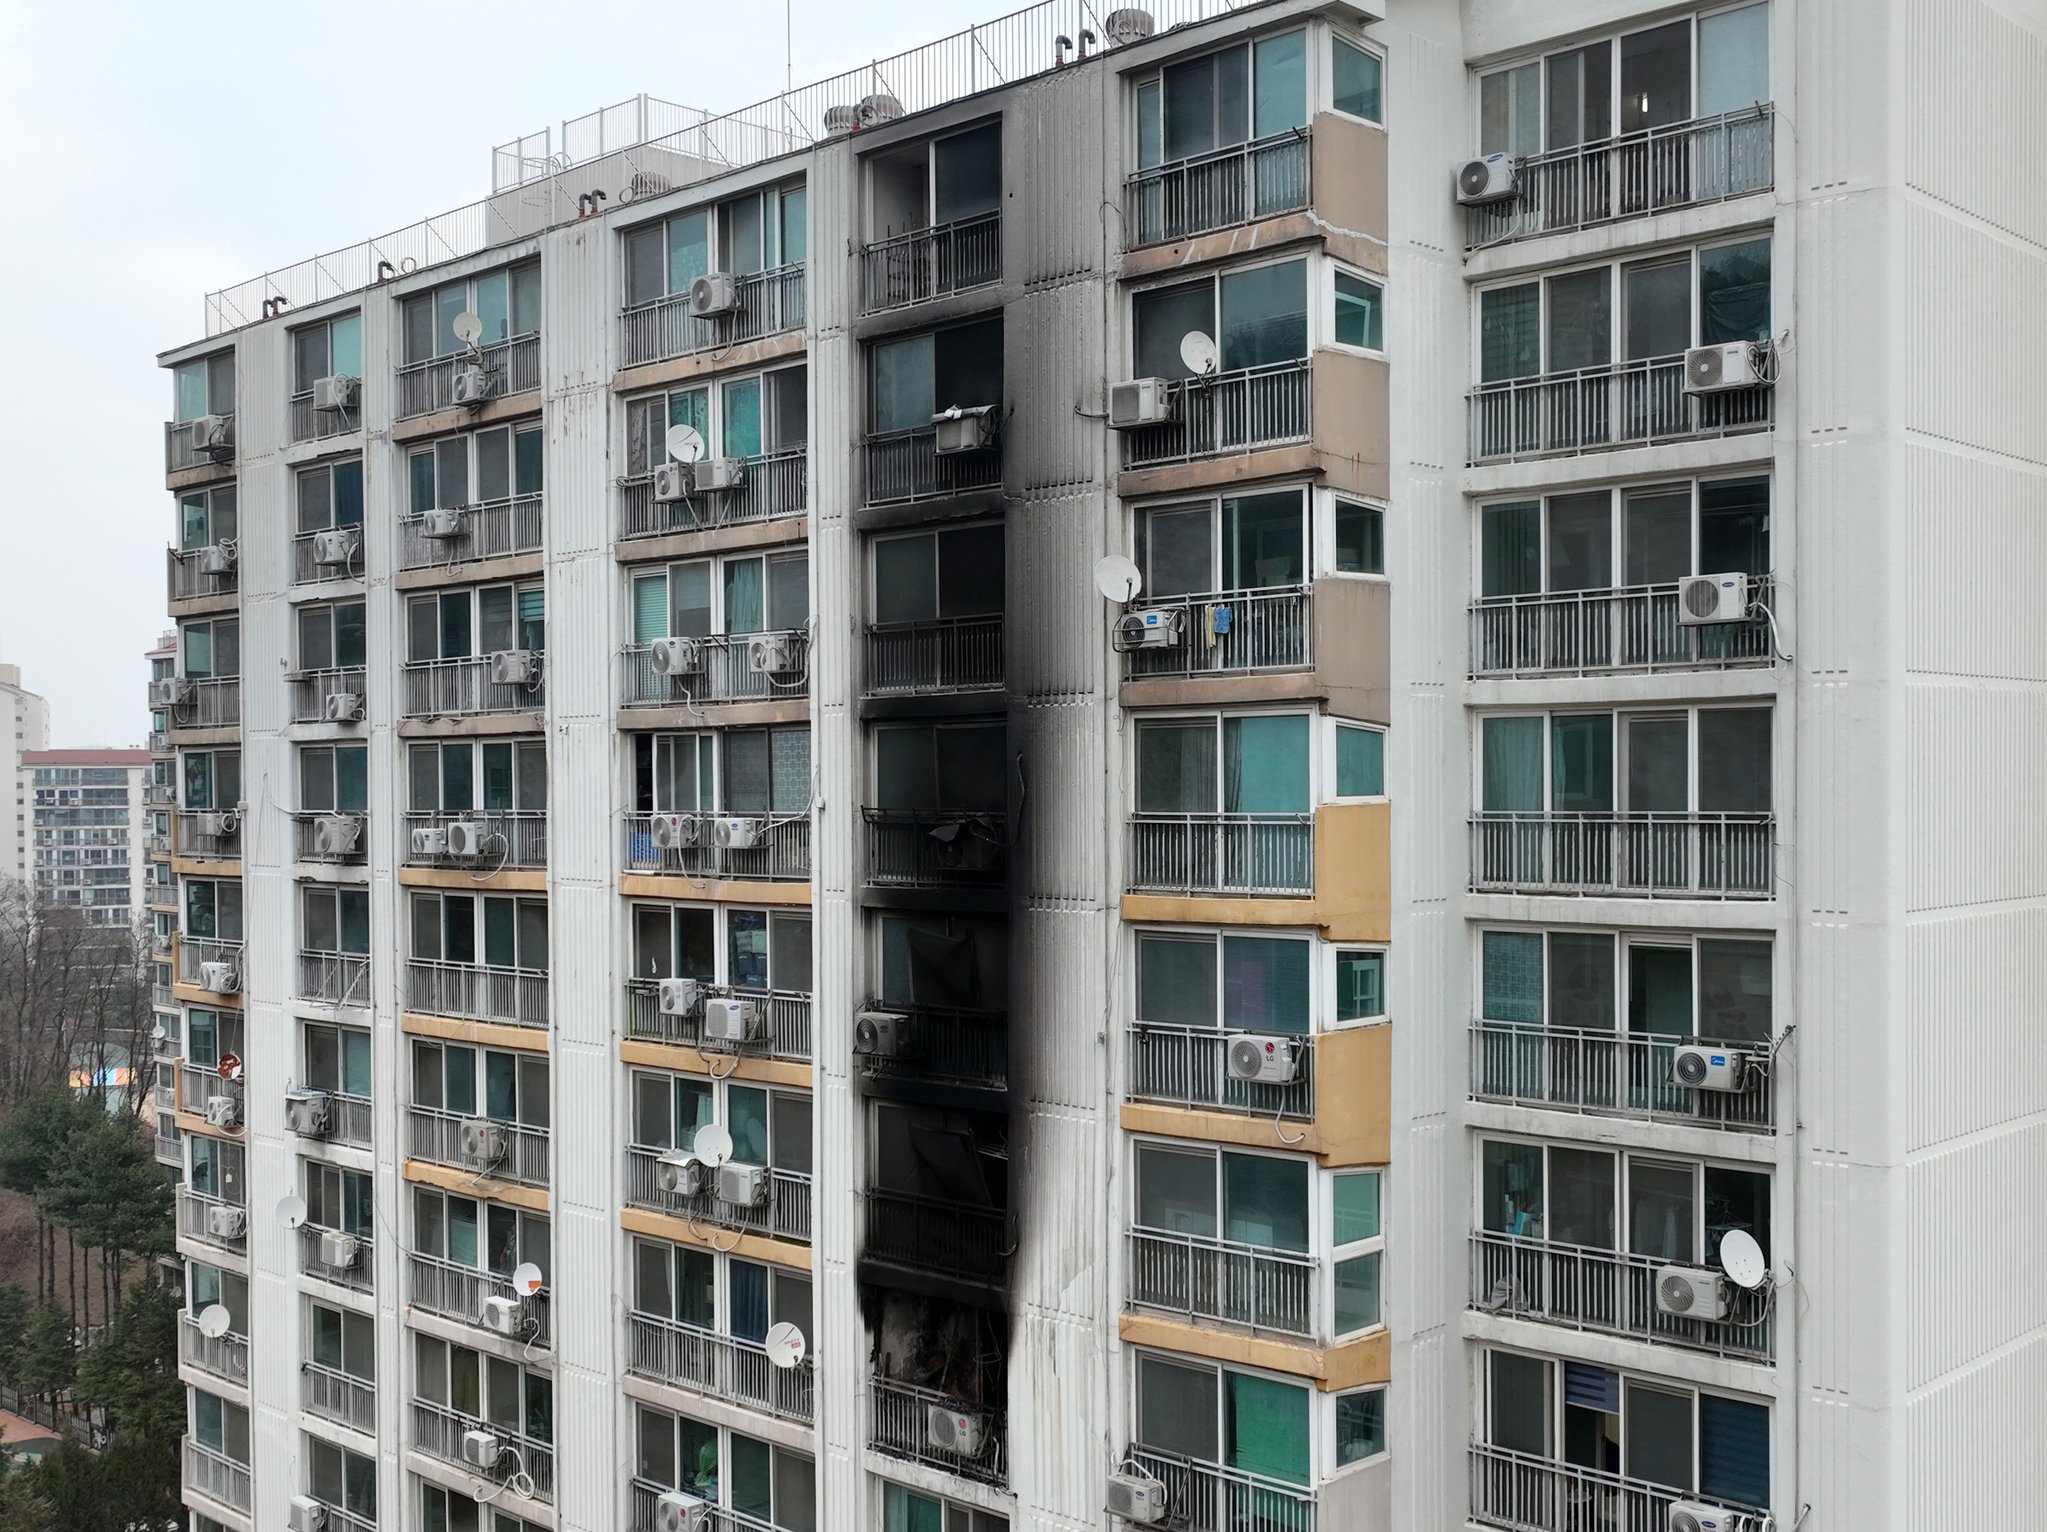 지난 2일 오전 경기 군포시 산본동의 한 아파트에서 화재가 발생해 주민 1명이 숨지고 10여명은 연기흡입 등 부상을 입었다. 사진은 화재가 발생한 아파트의 모습. 뉴스1